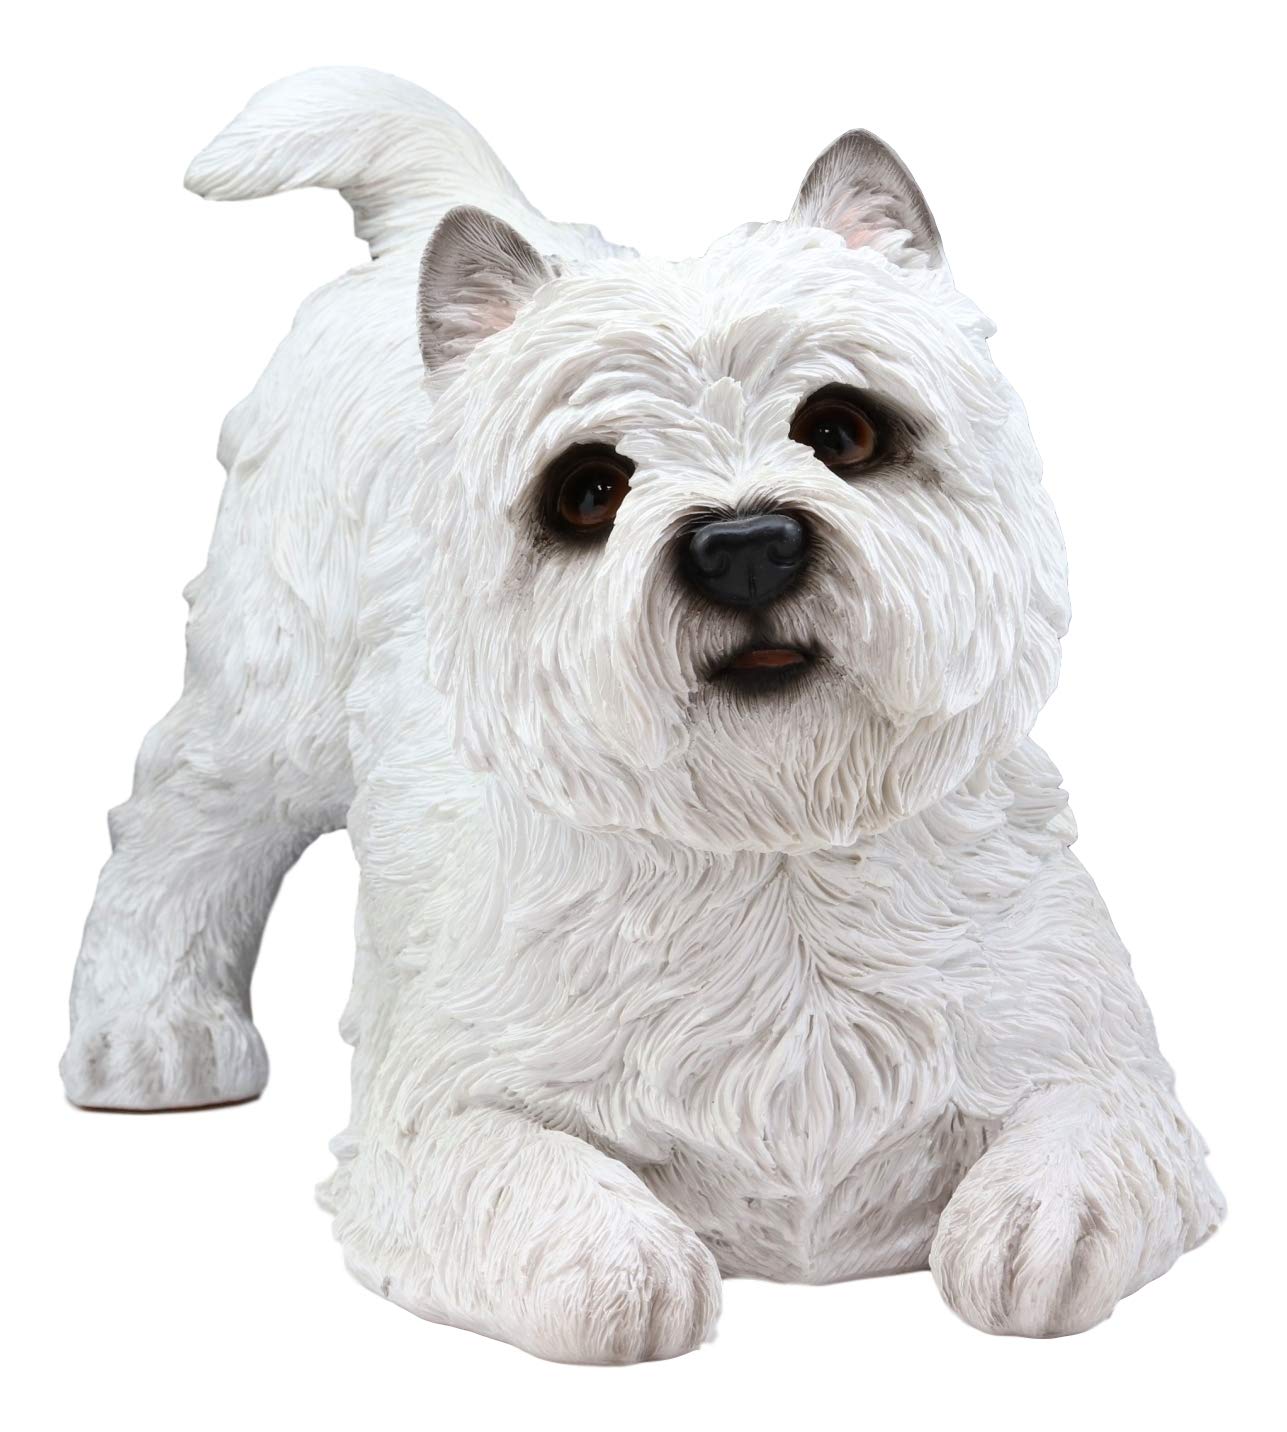 Ebros Large Lifelike West Highland Terrier White Westie Dog Statue 13.75"Long - image 3 of 4